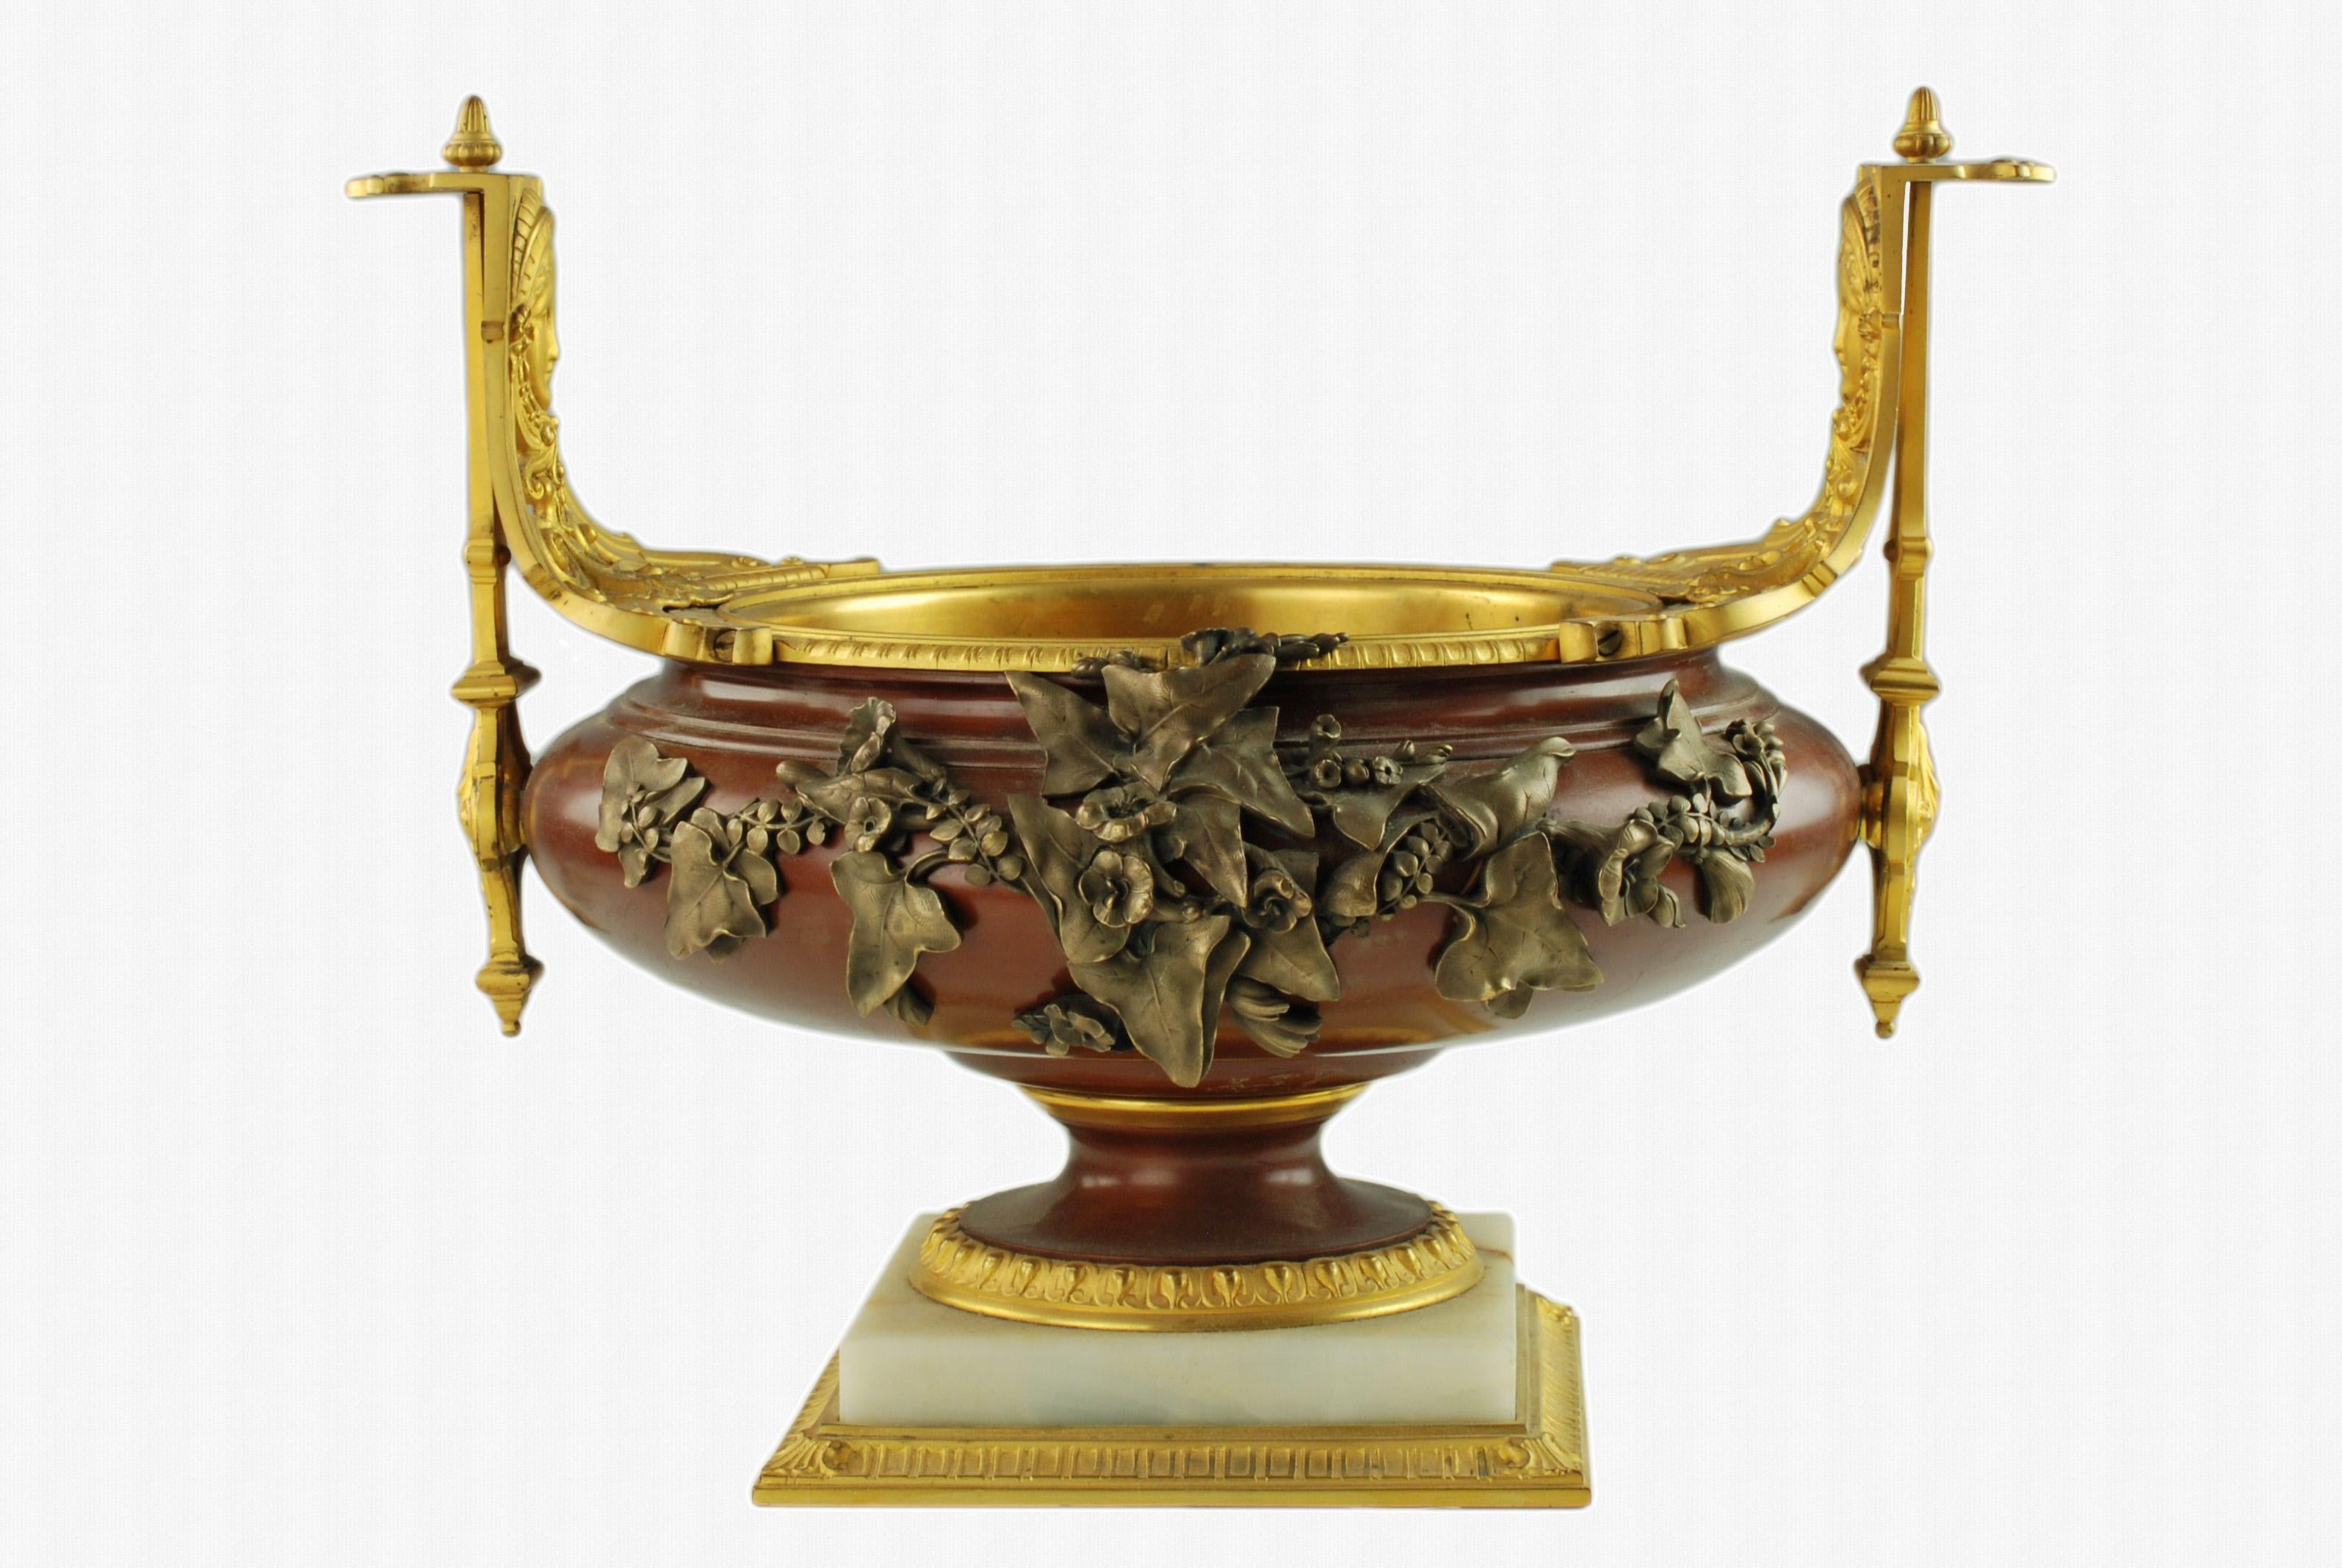 Cette exceptionnelle garniture française de la fin du 19e siècle comprend deux urnes à pied et une coupe basse à pied pour le centre de table. Les urnes et la coupe sont en bronze patiné avec des montures en bronze doré qui comportent des détails de